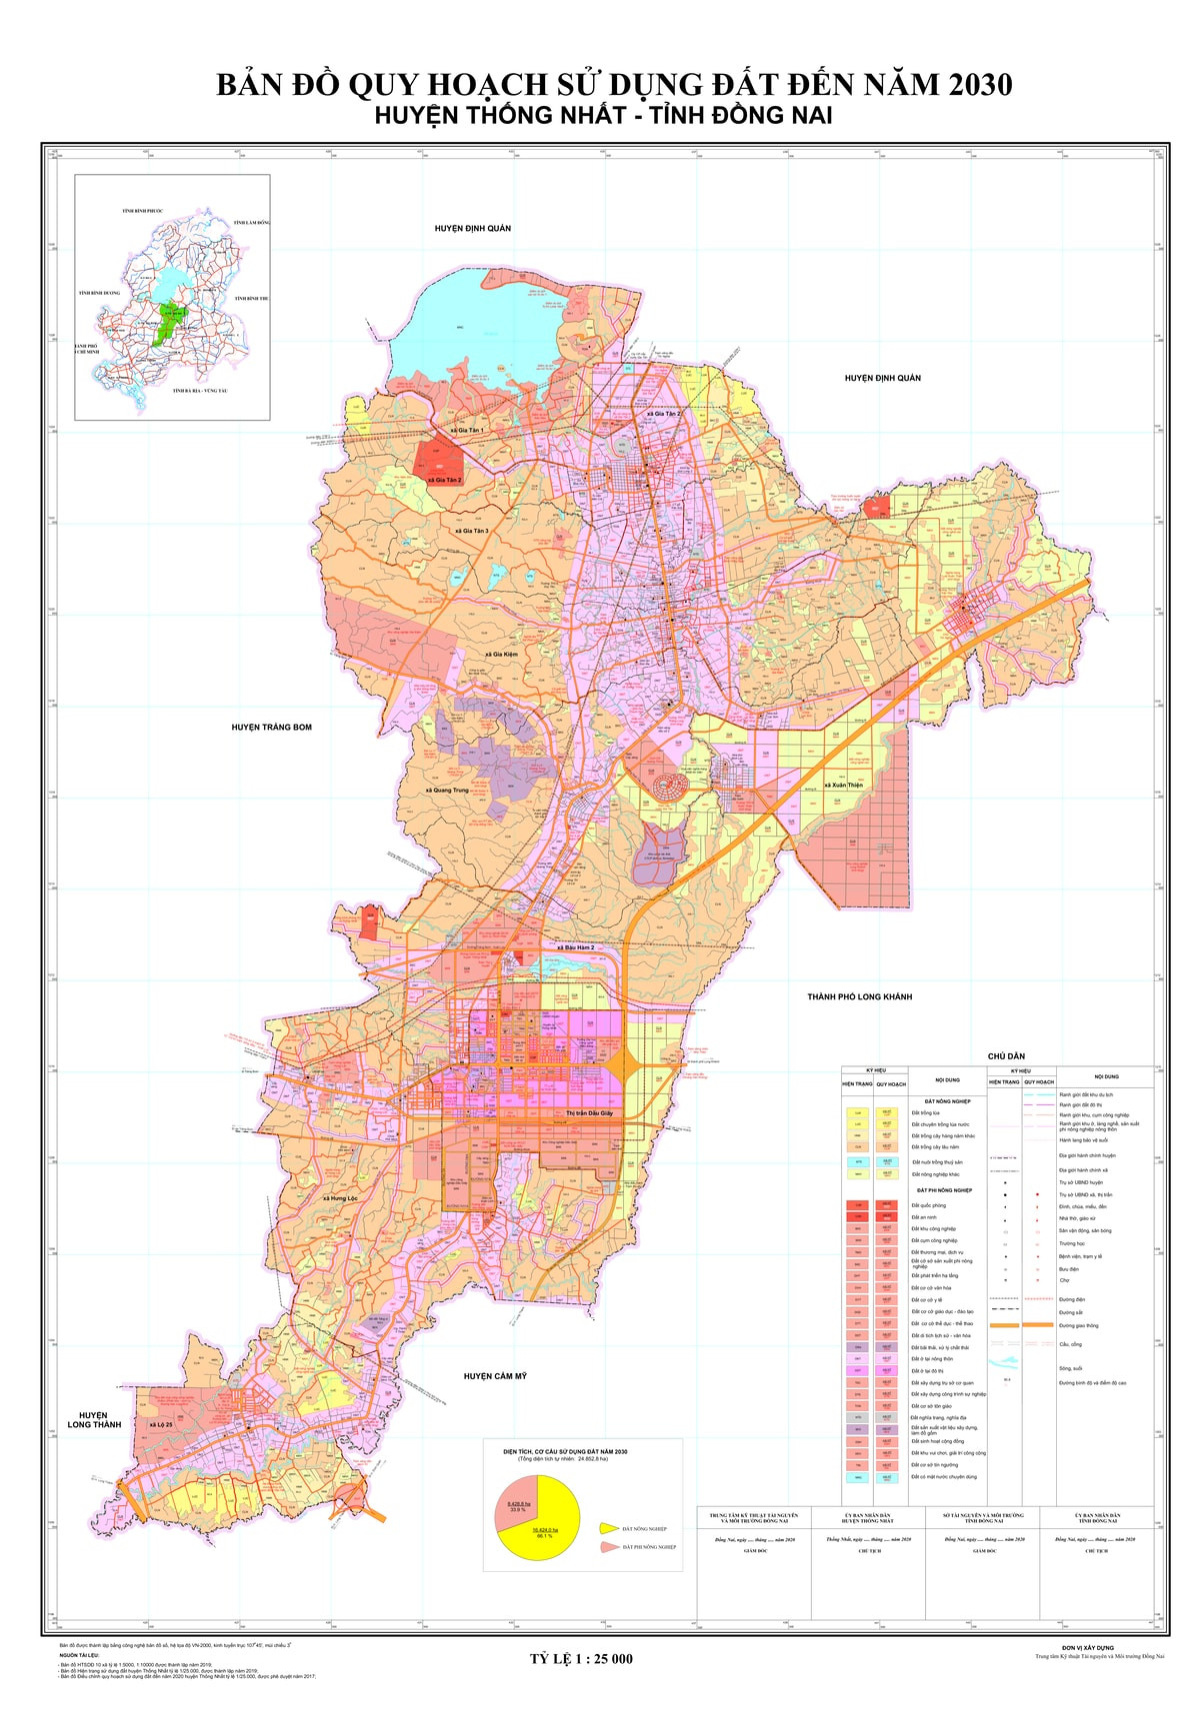 Xem bản đồ huyện Thống Nhất Đồng Nai cập nhật năm 2024 để khám phá những thay đổi hiện tại và kế hoạch phát triển trong tương lai. Công nghệ mới giúp cho bản đồ trở nên sinh động và chân thật hơn bao giờ hết. Hãy cùng đến với bản đồ và khám phá cảnh đẹp của huyện Thống Nhất!